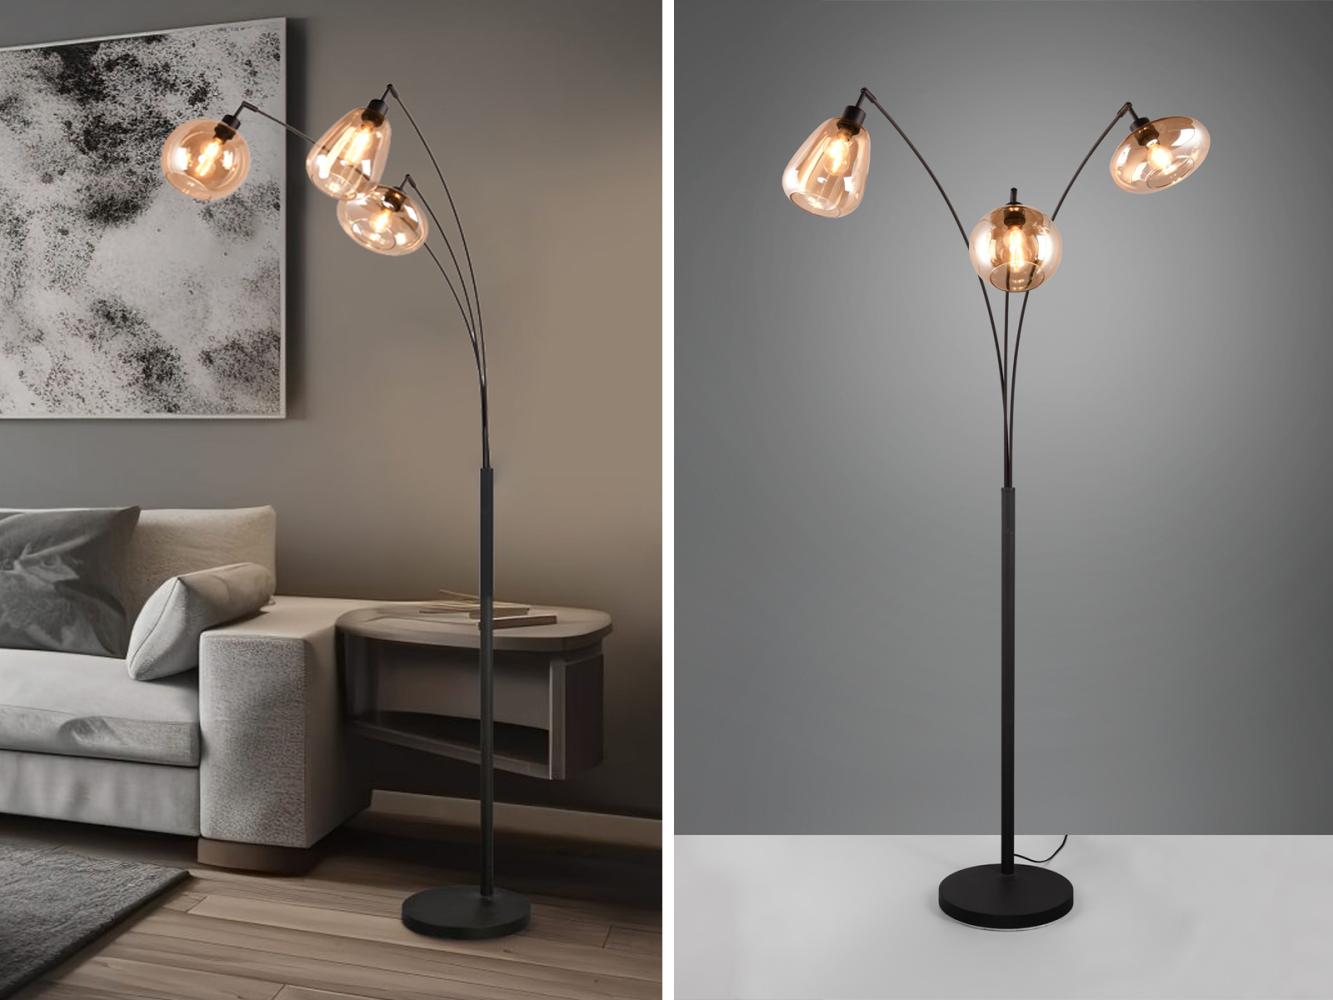 Große LED Stehleuchte mit 3 Glas Lampenschirmen amberfarbig, H: 200cm Bild 1